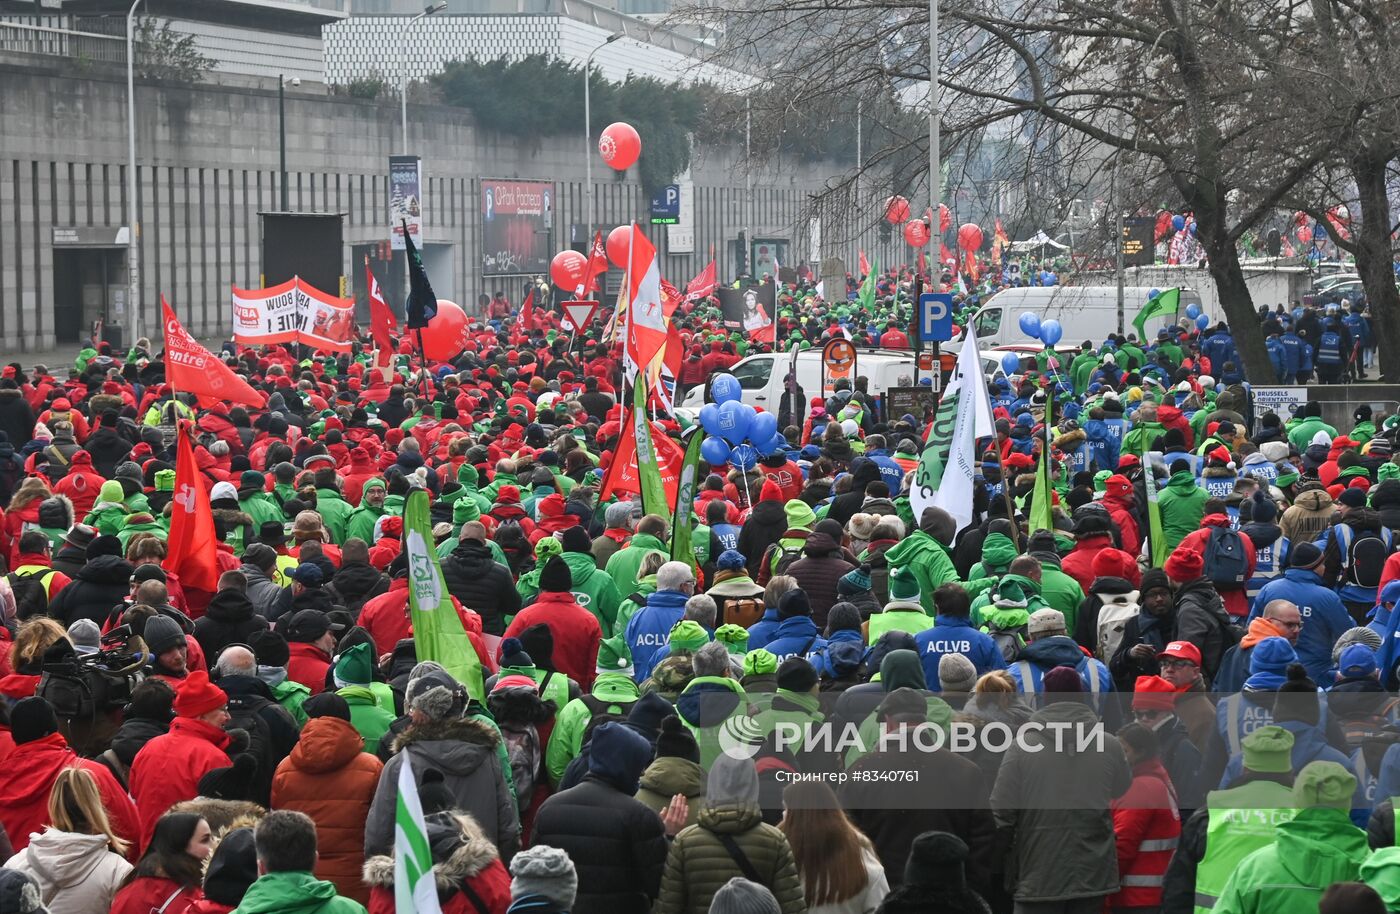 Акция протеста против повышения цен в Бельгии